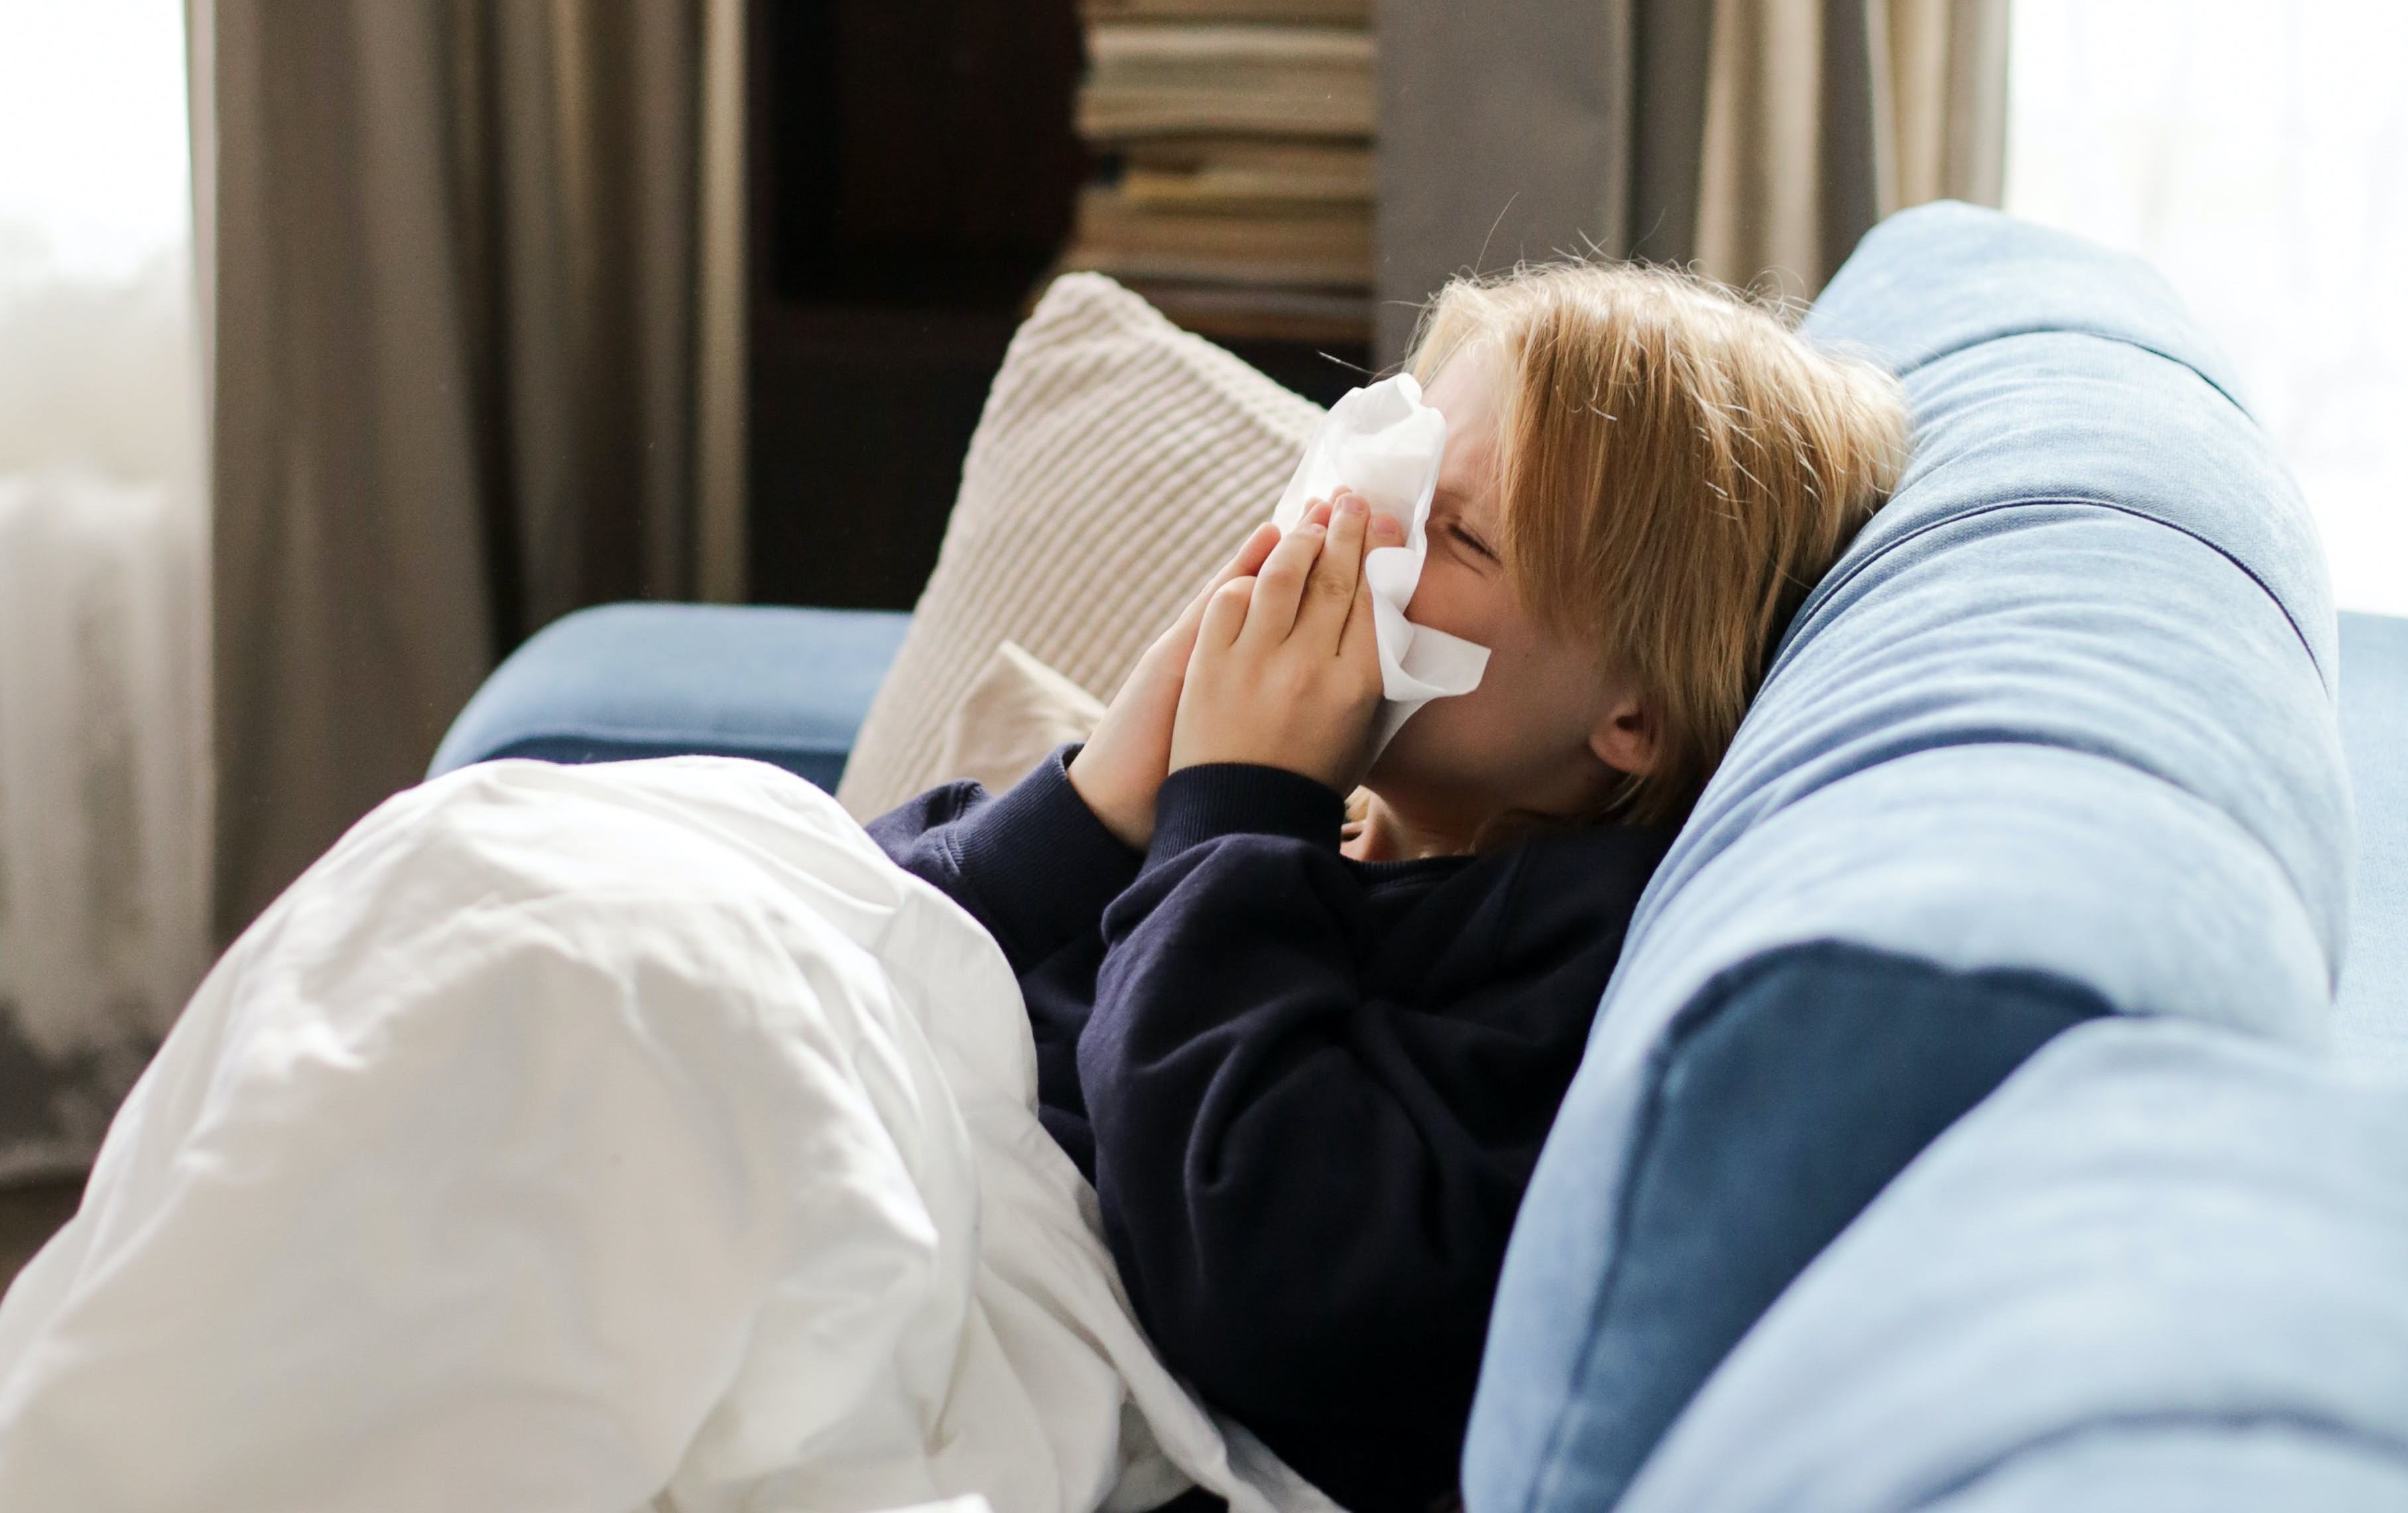 Copiii cu infectii respiratorii, contagiosi mai mult timp decat adultii! Cat trebuie tinut acasa un copil racit